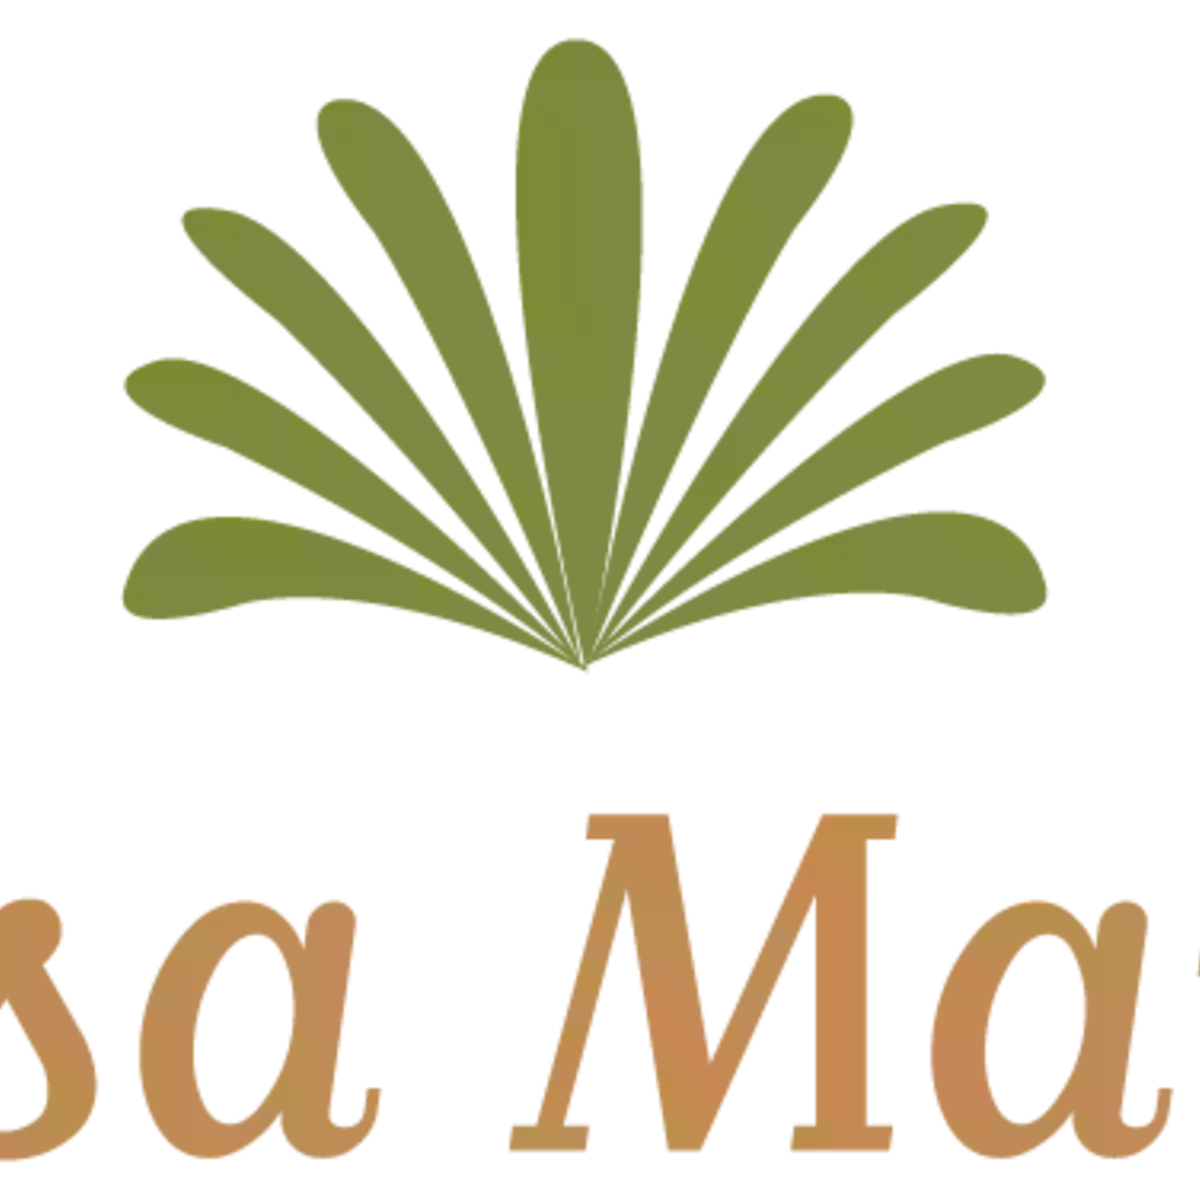 Casa Maria Apartments